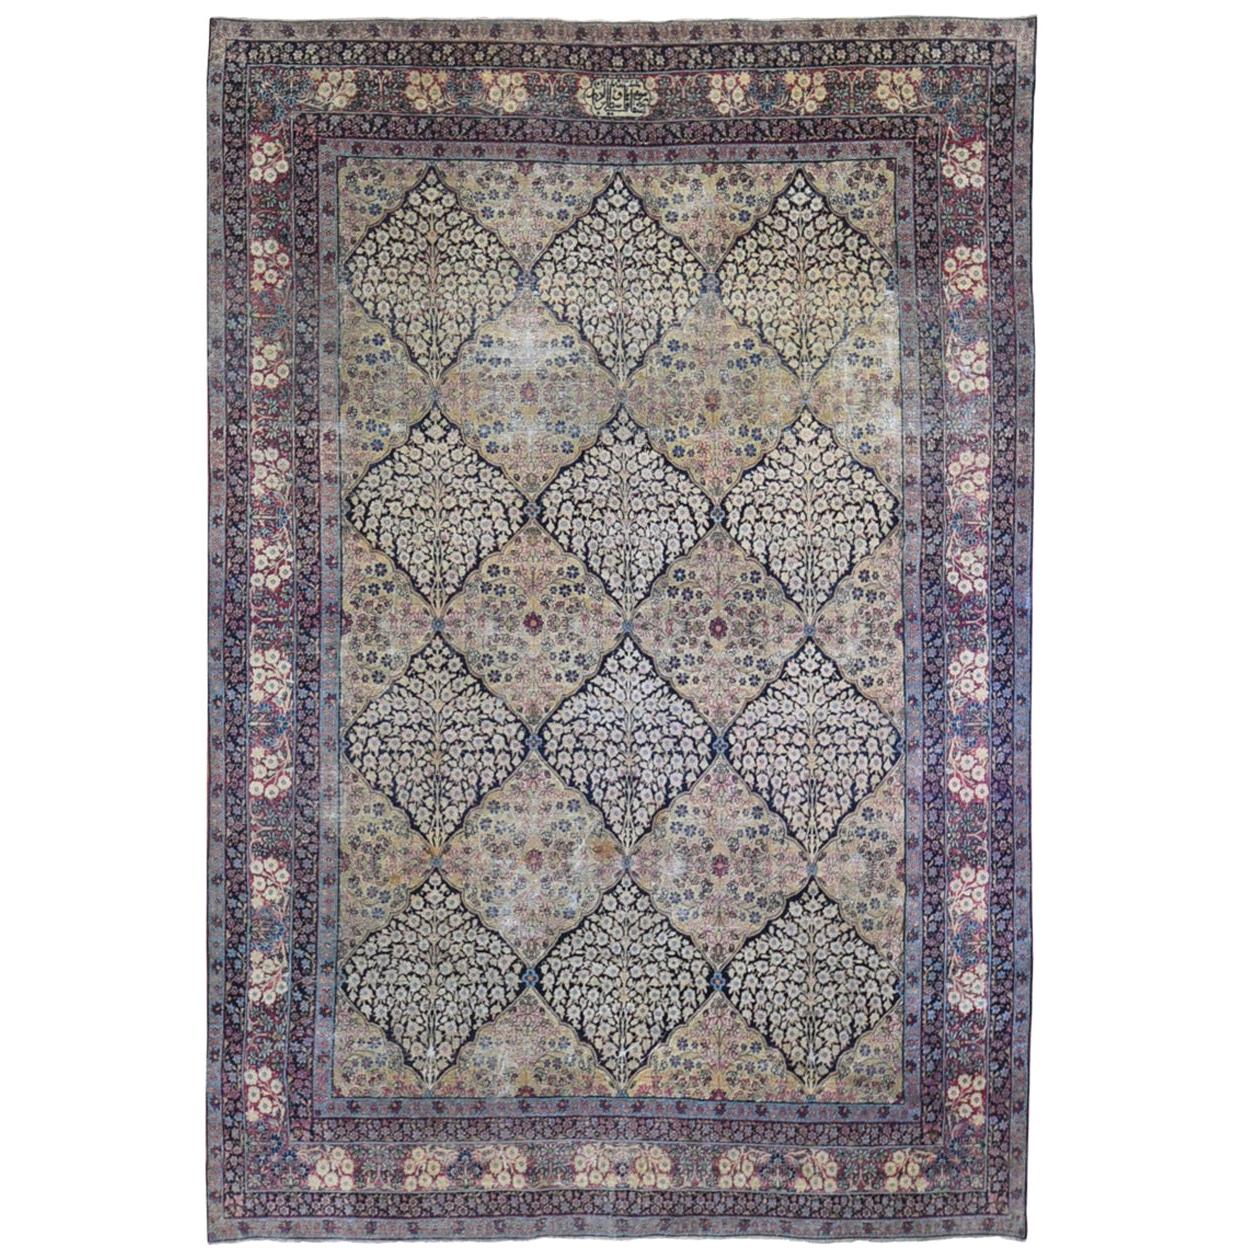 Antiker, handgeknüpfter, antiker, persischer Kermanshah-Teppich aus Wolle, signierte, getragene Flächen im Gartendesign